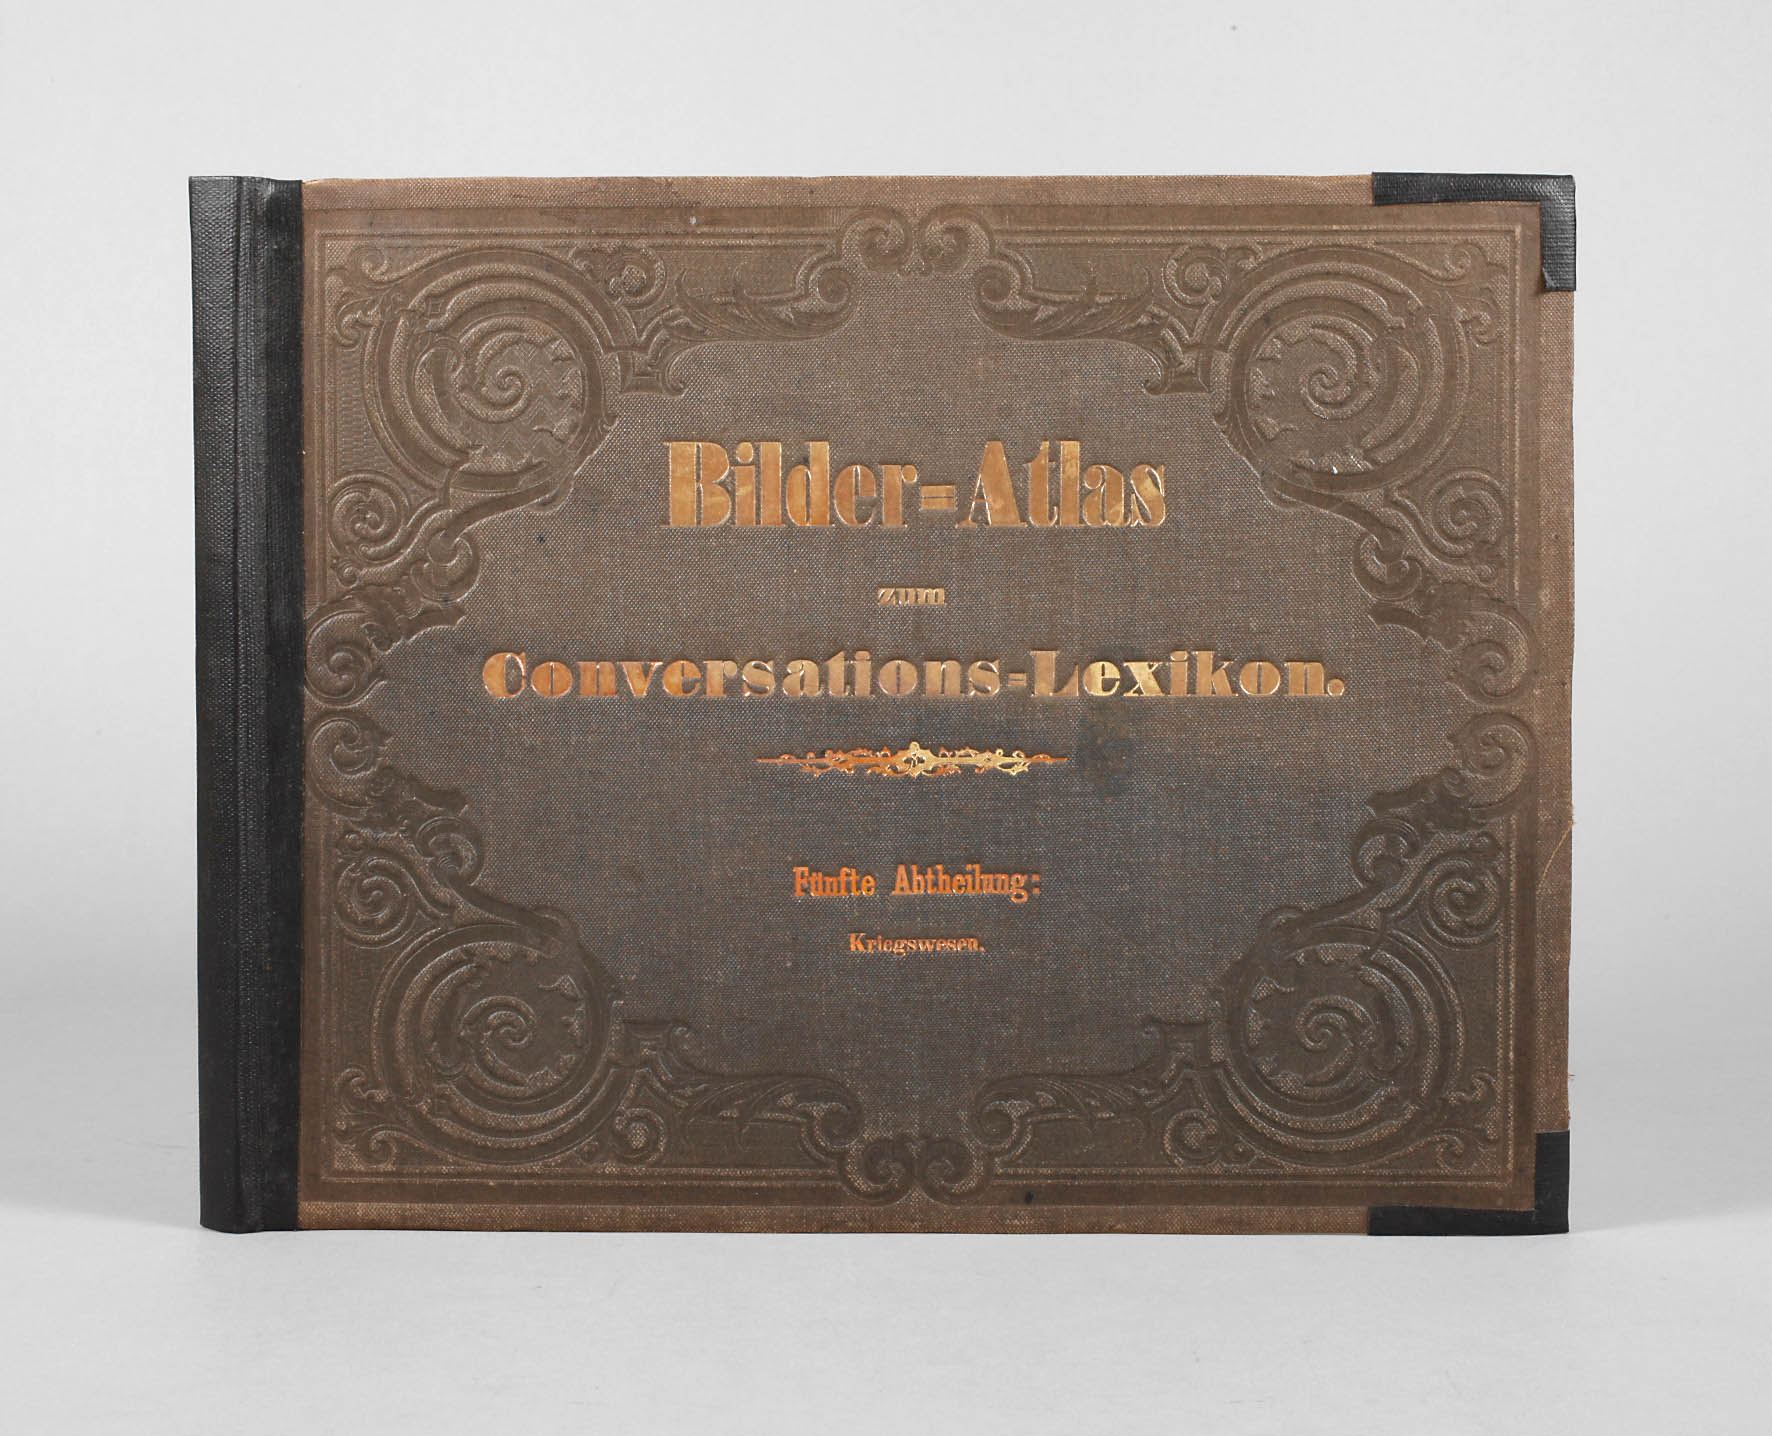 Bilder-Atlas zum Conversations-Lexikon 1860